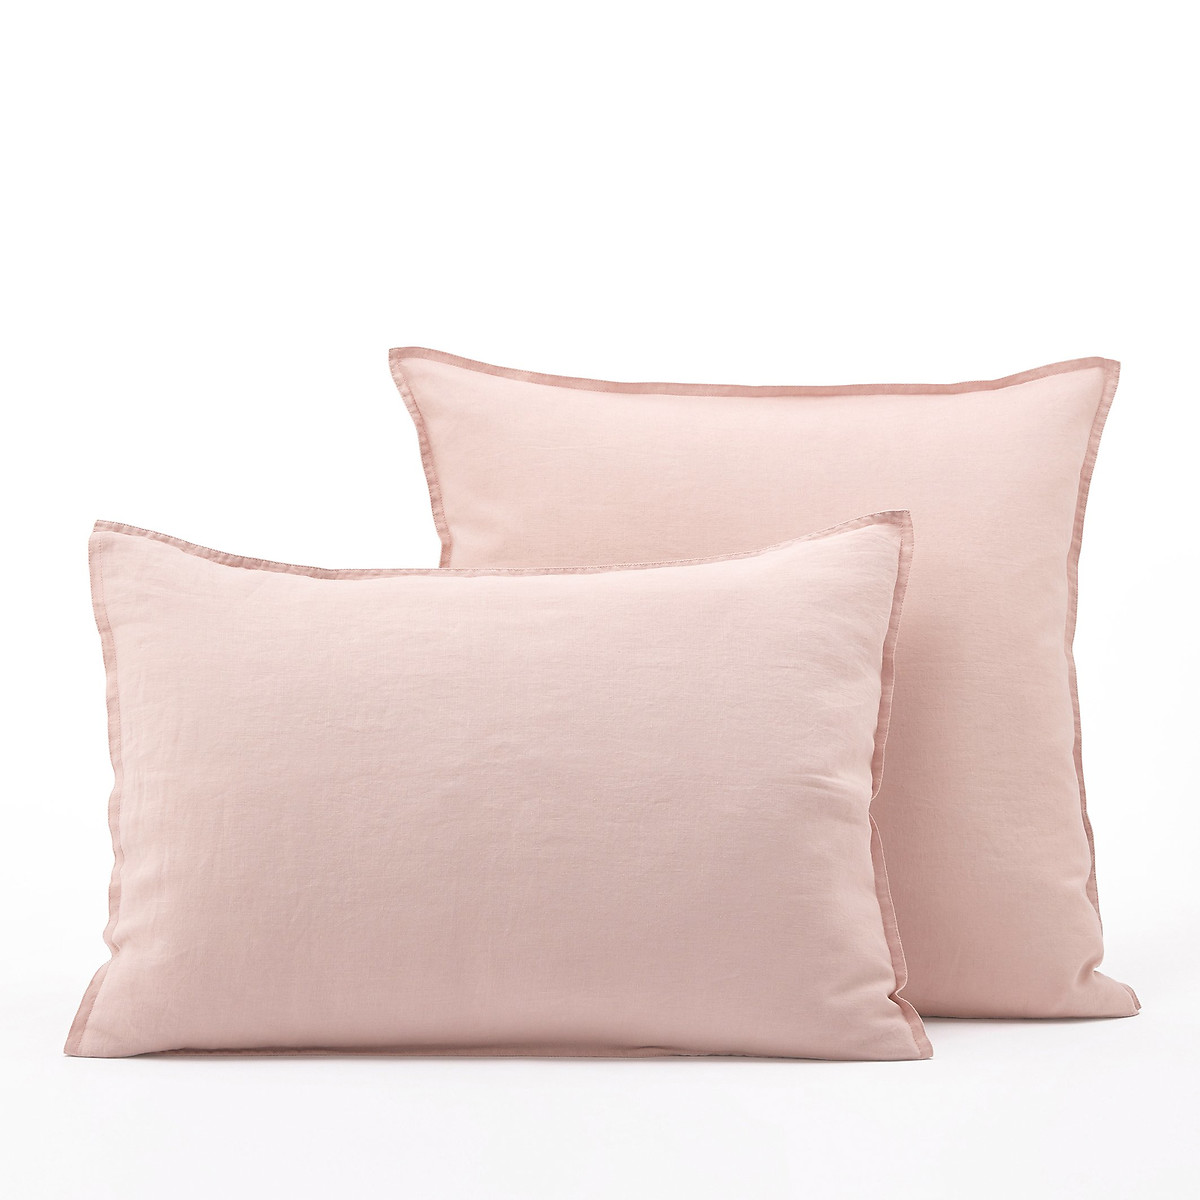 Наволочка из стираного льна Elina 50 x 70 см розовый наволочка однотонная на подушку или валик из стираного льна 50 x 70 см зеленый